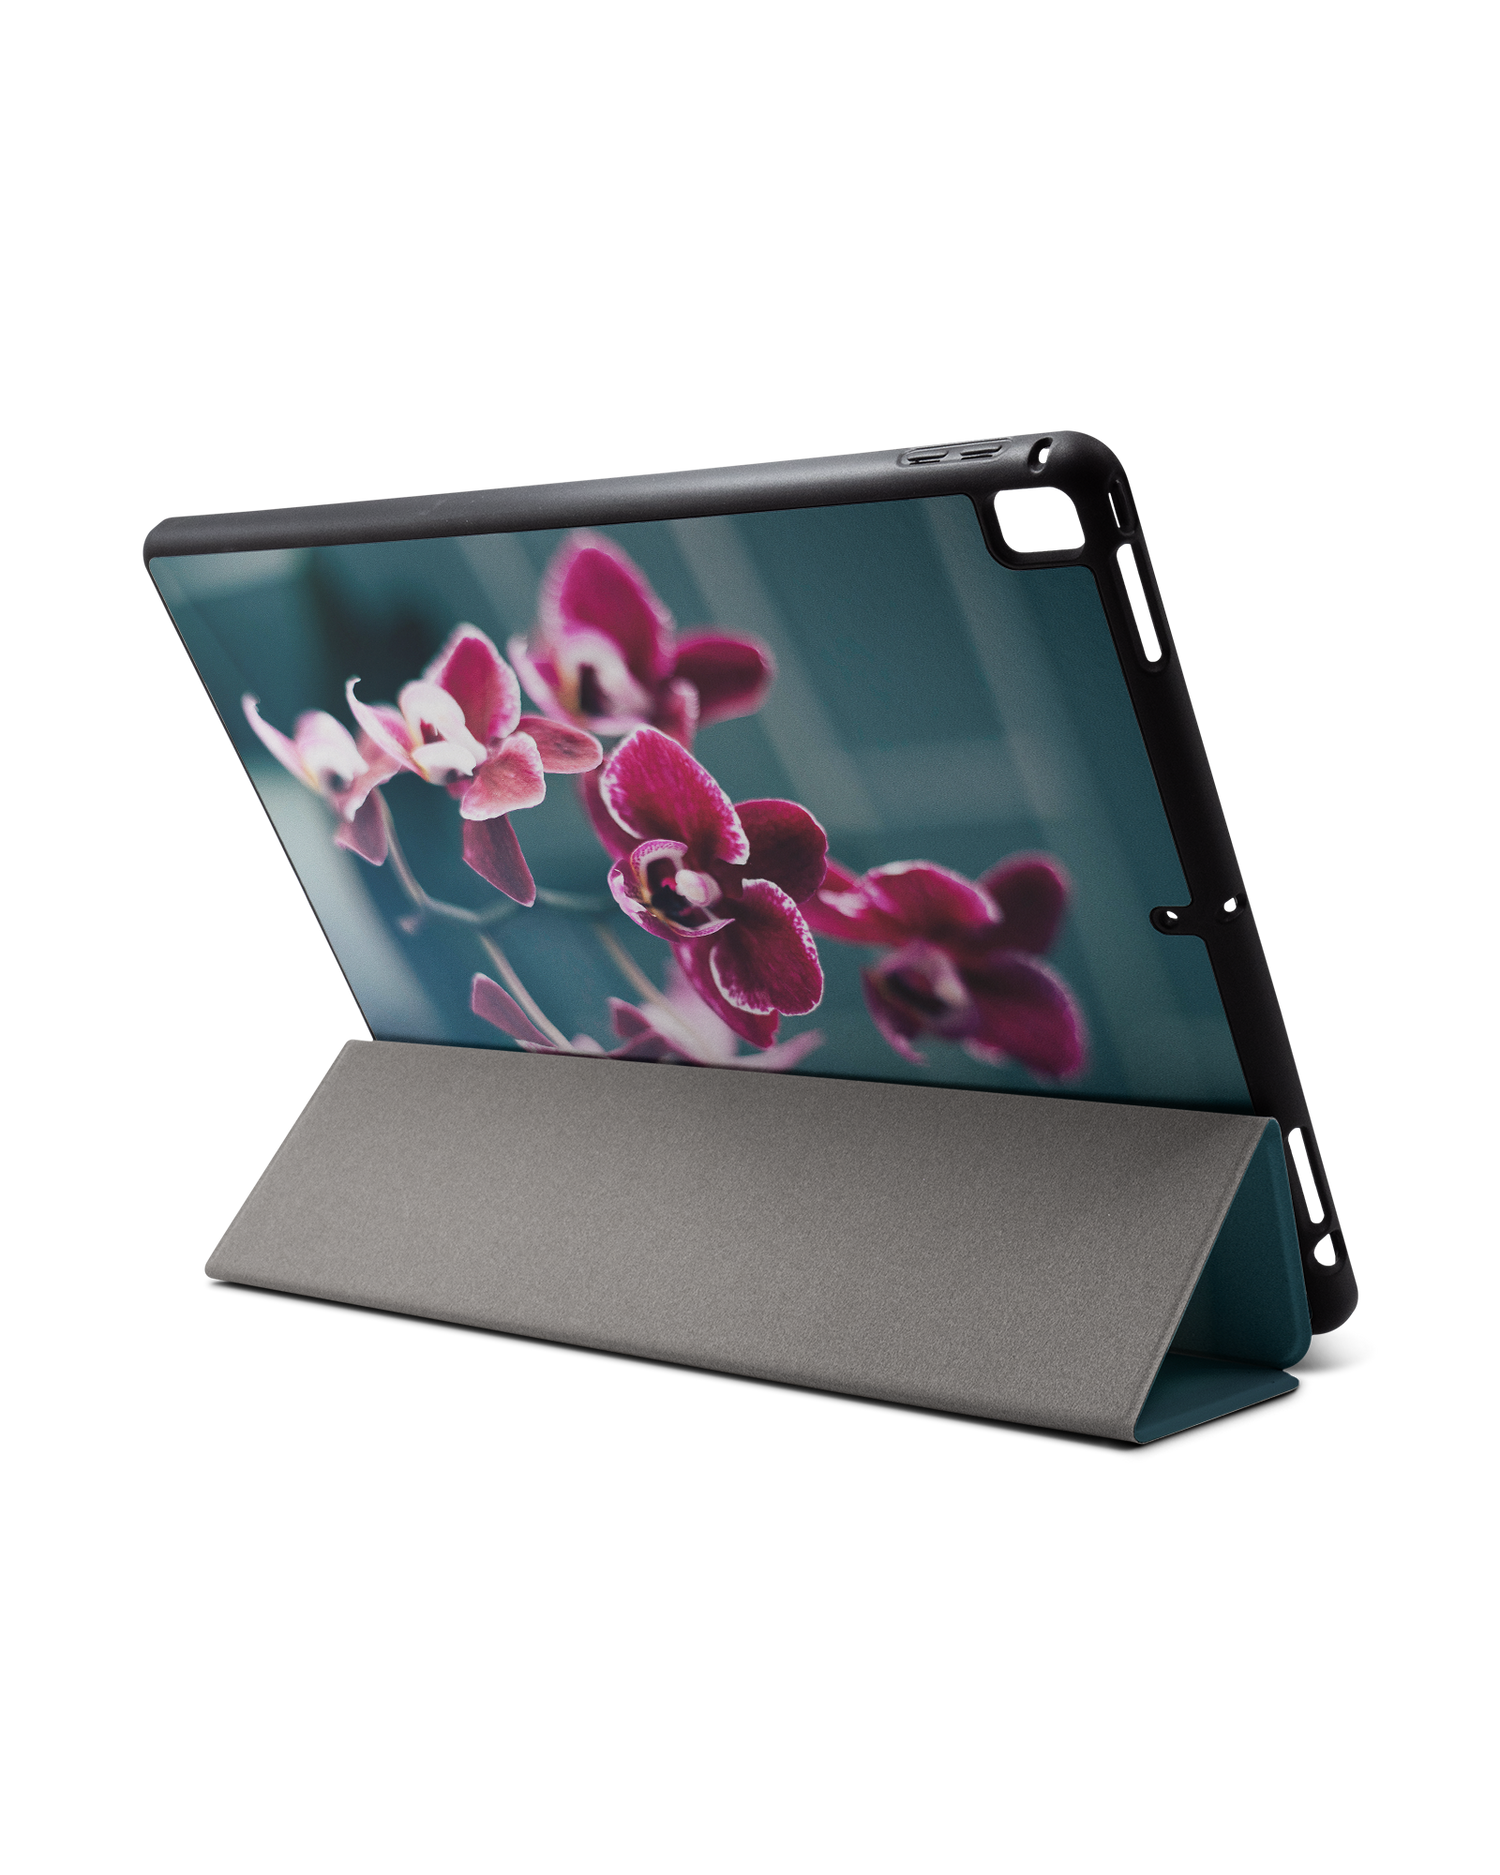 Orchid iPad Hülle mit Stifthalter für Apple iPad Pro 2 12.9'' (2017): Aufgestellt im Querformat von hinten